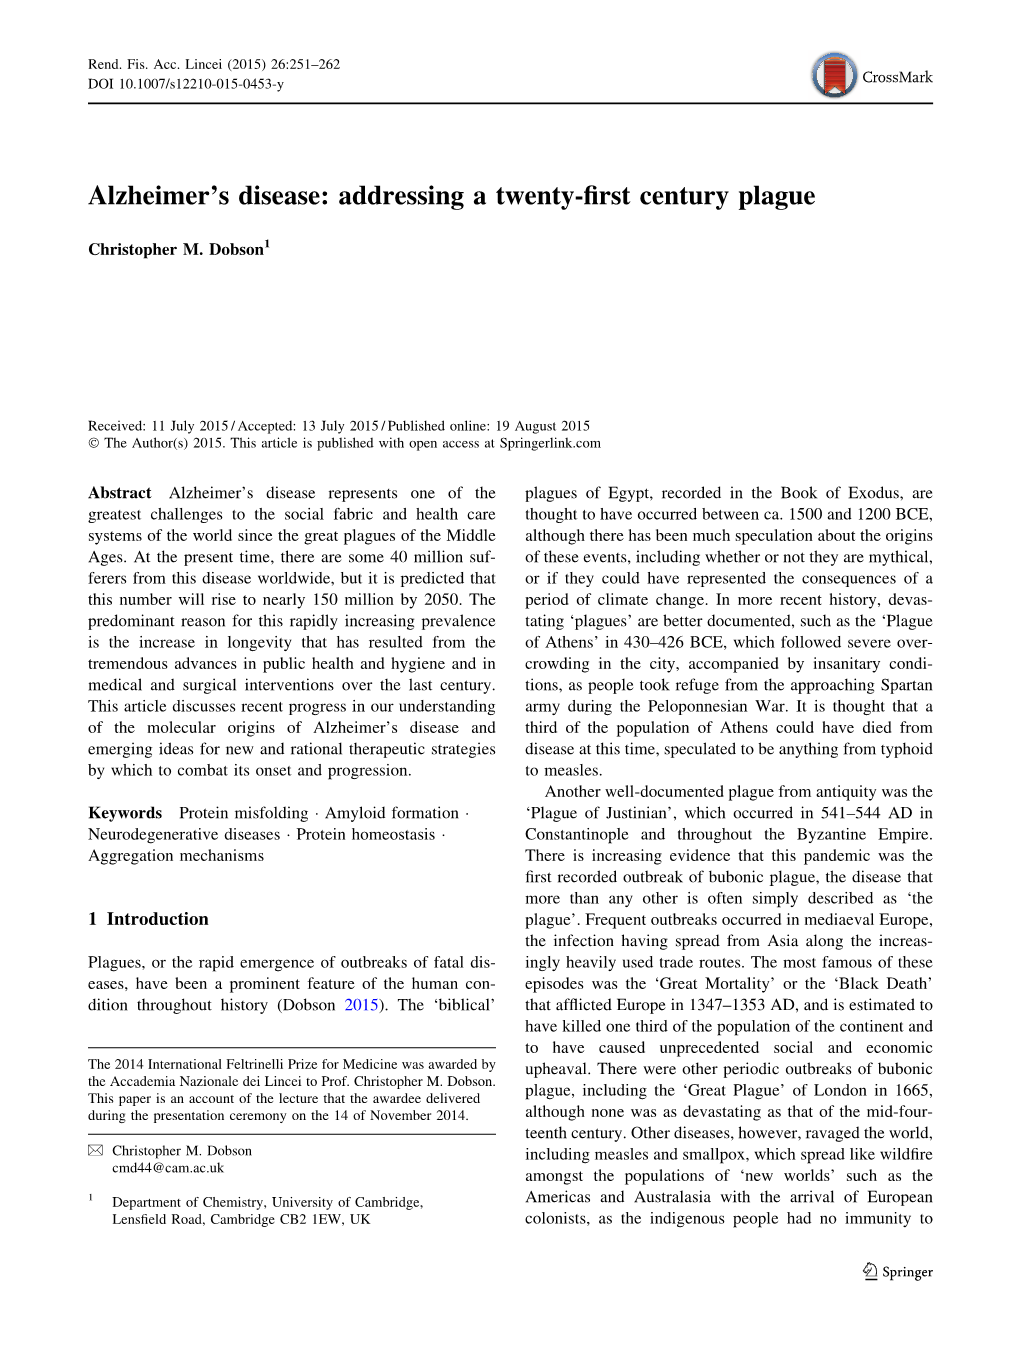 Alzheimer's Disease: Addressing a Twenty-First Century Plague